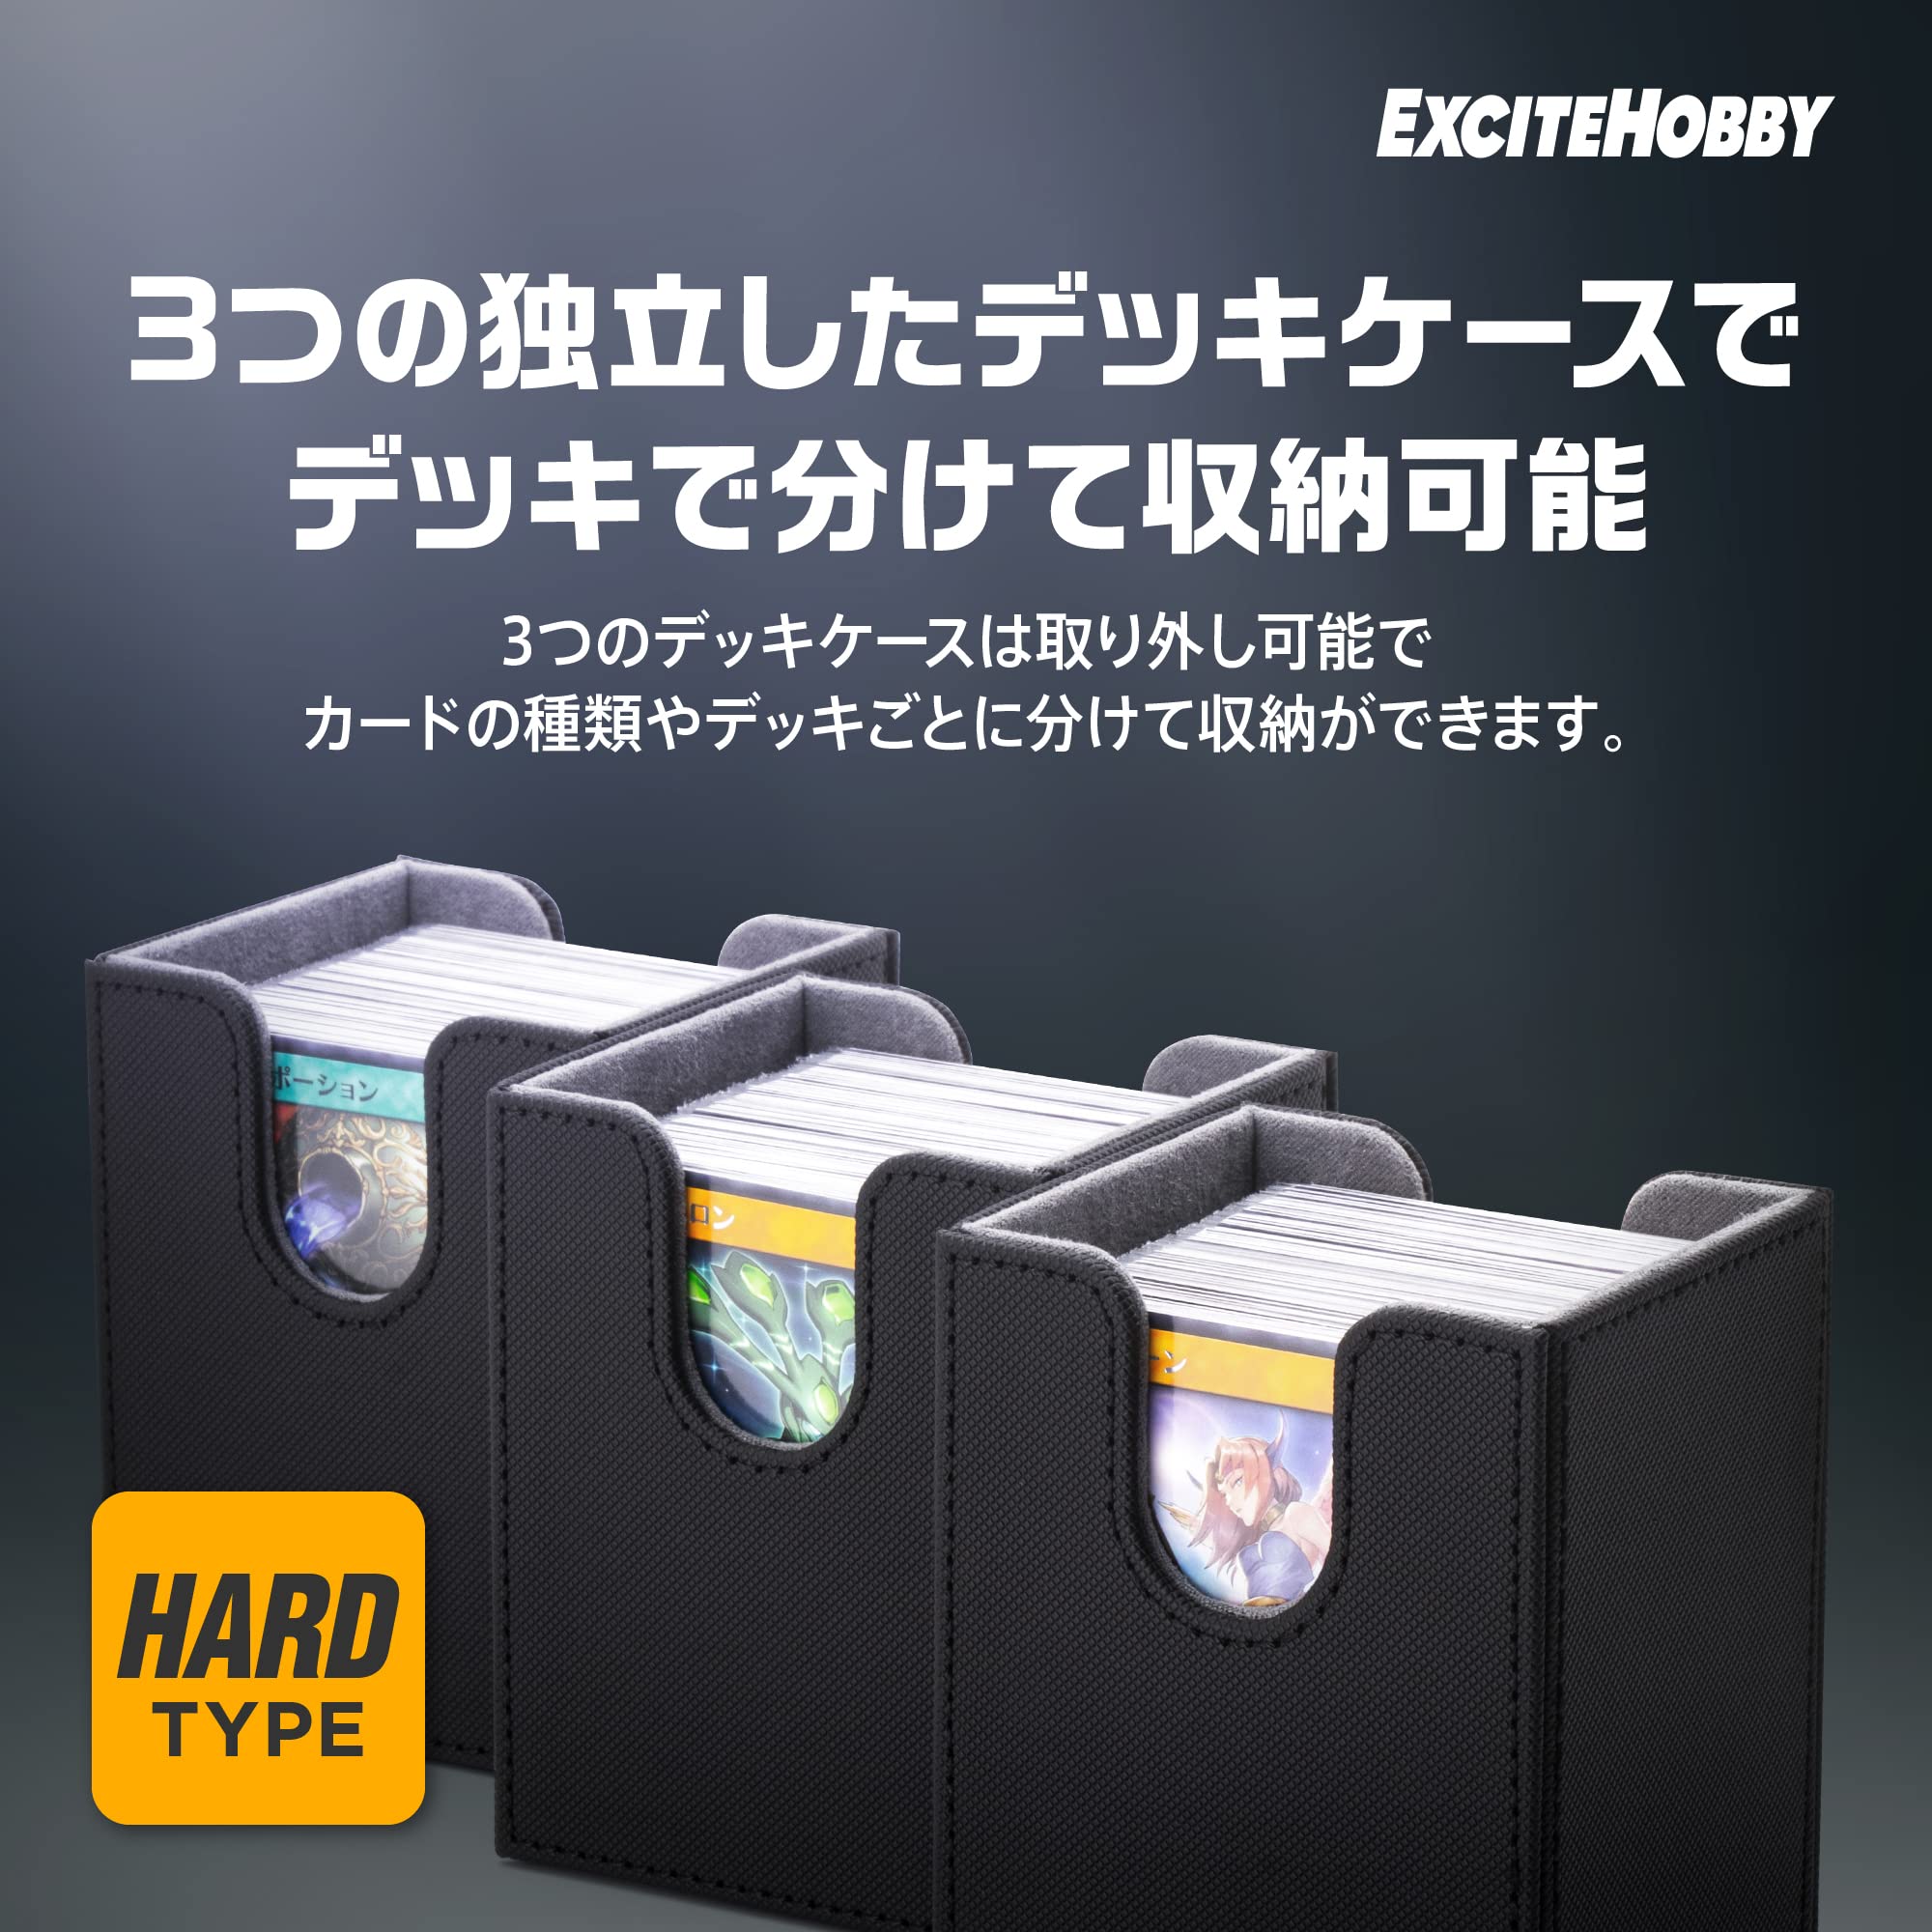 EXCITEHOBBY トレカ ３つのデッキケース トレーディング スリーブに入れたまま保存 カードケース 汎用的なトレーディングカードサイズに対応(スタンダート/スモール) 約300枚収納 マグネット開閉機能付き